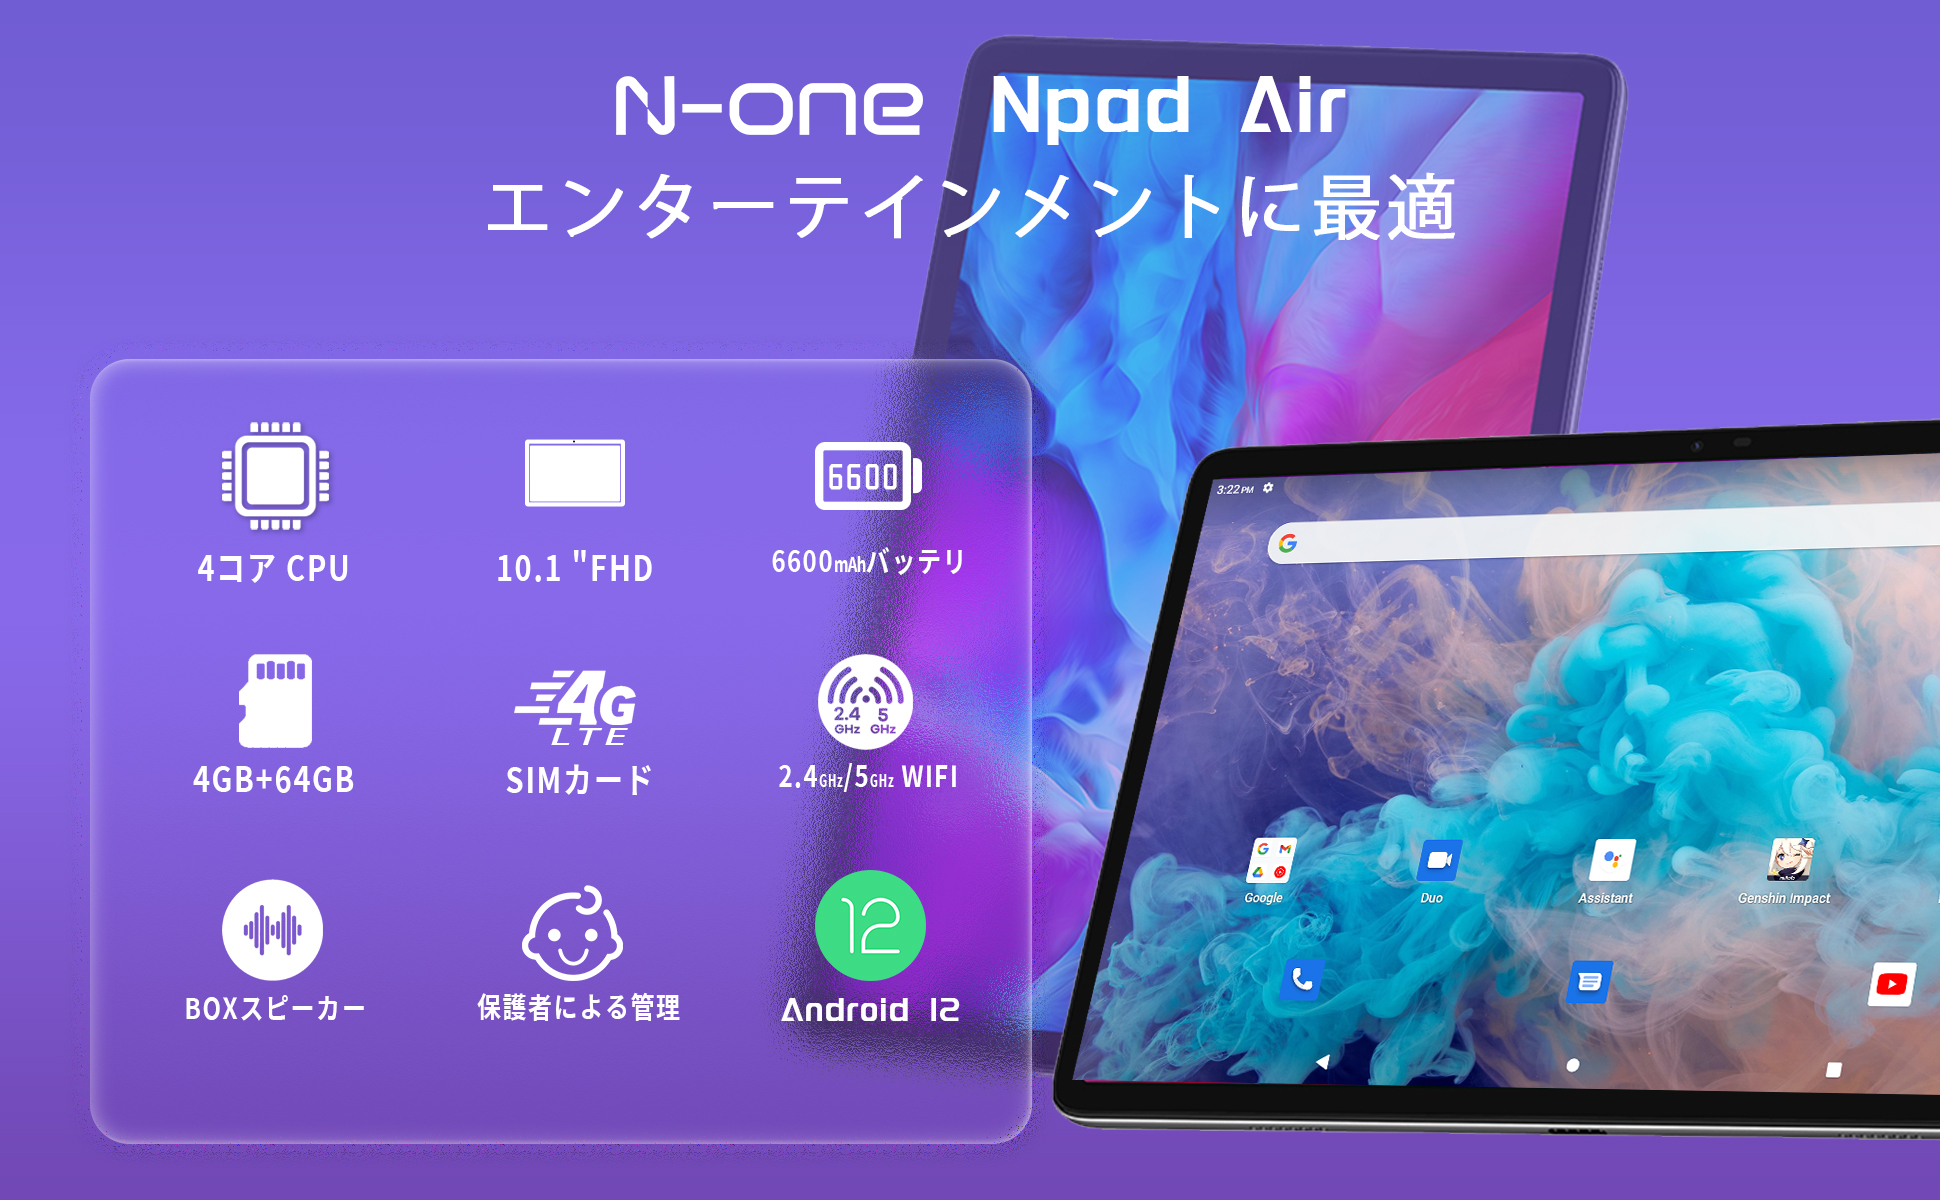 タブレット アンドロイド Android 12、N-one NPad Air-